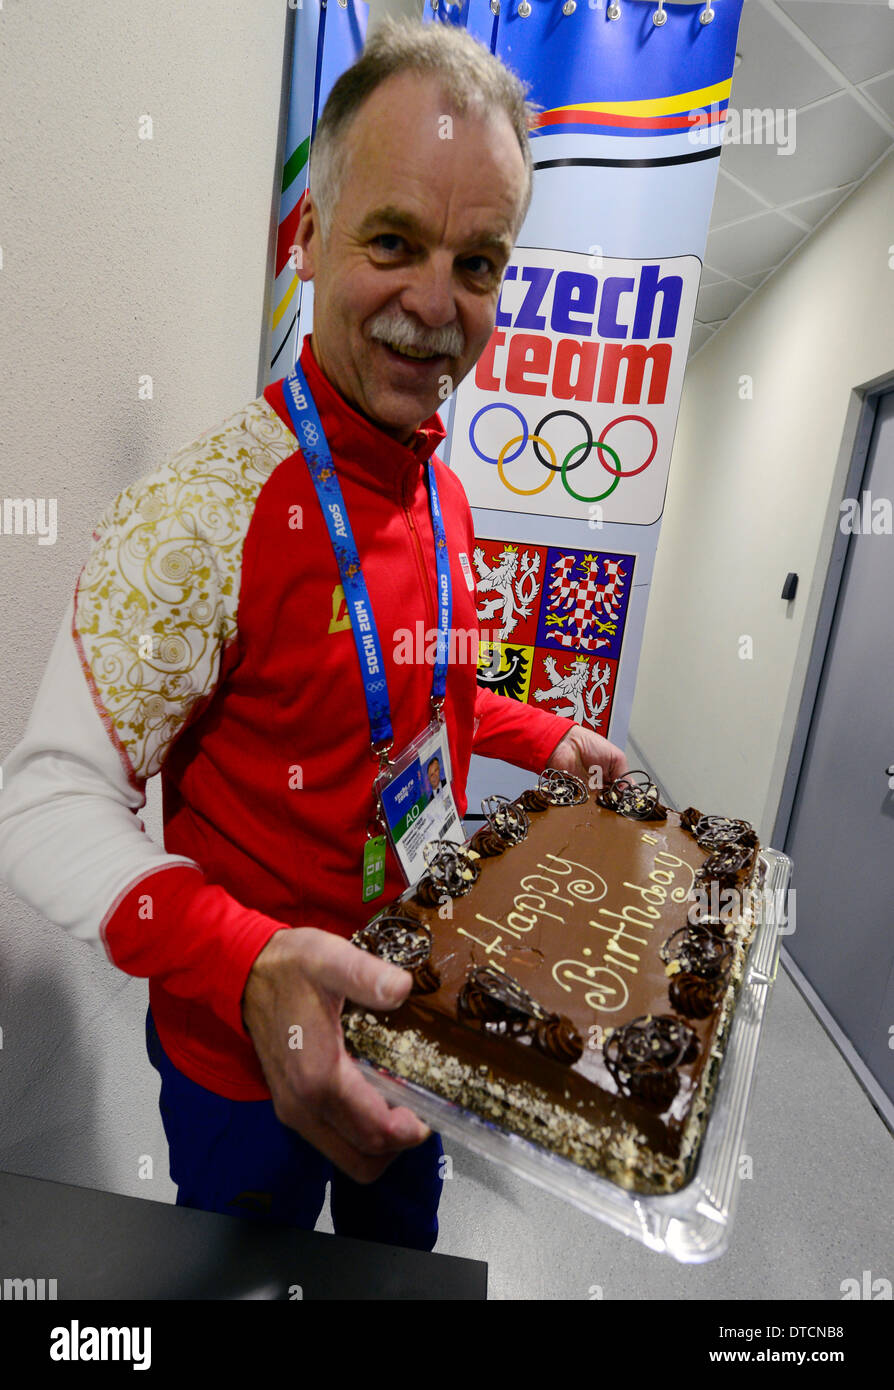 Sochi, Russie. Feb 15, 2014. Directeur général de l'Association de hockey sur glace tchèque Slavomir Lener est titulaire d'un gâteau au chocolat pour Jaromir Jagr sur son 42e anniversaire à Sotchi, Russie, le 15 février 2014. © Roman Vondrous/CTK Photo/Alamy Live News Banque D'Images